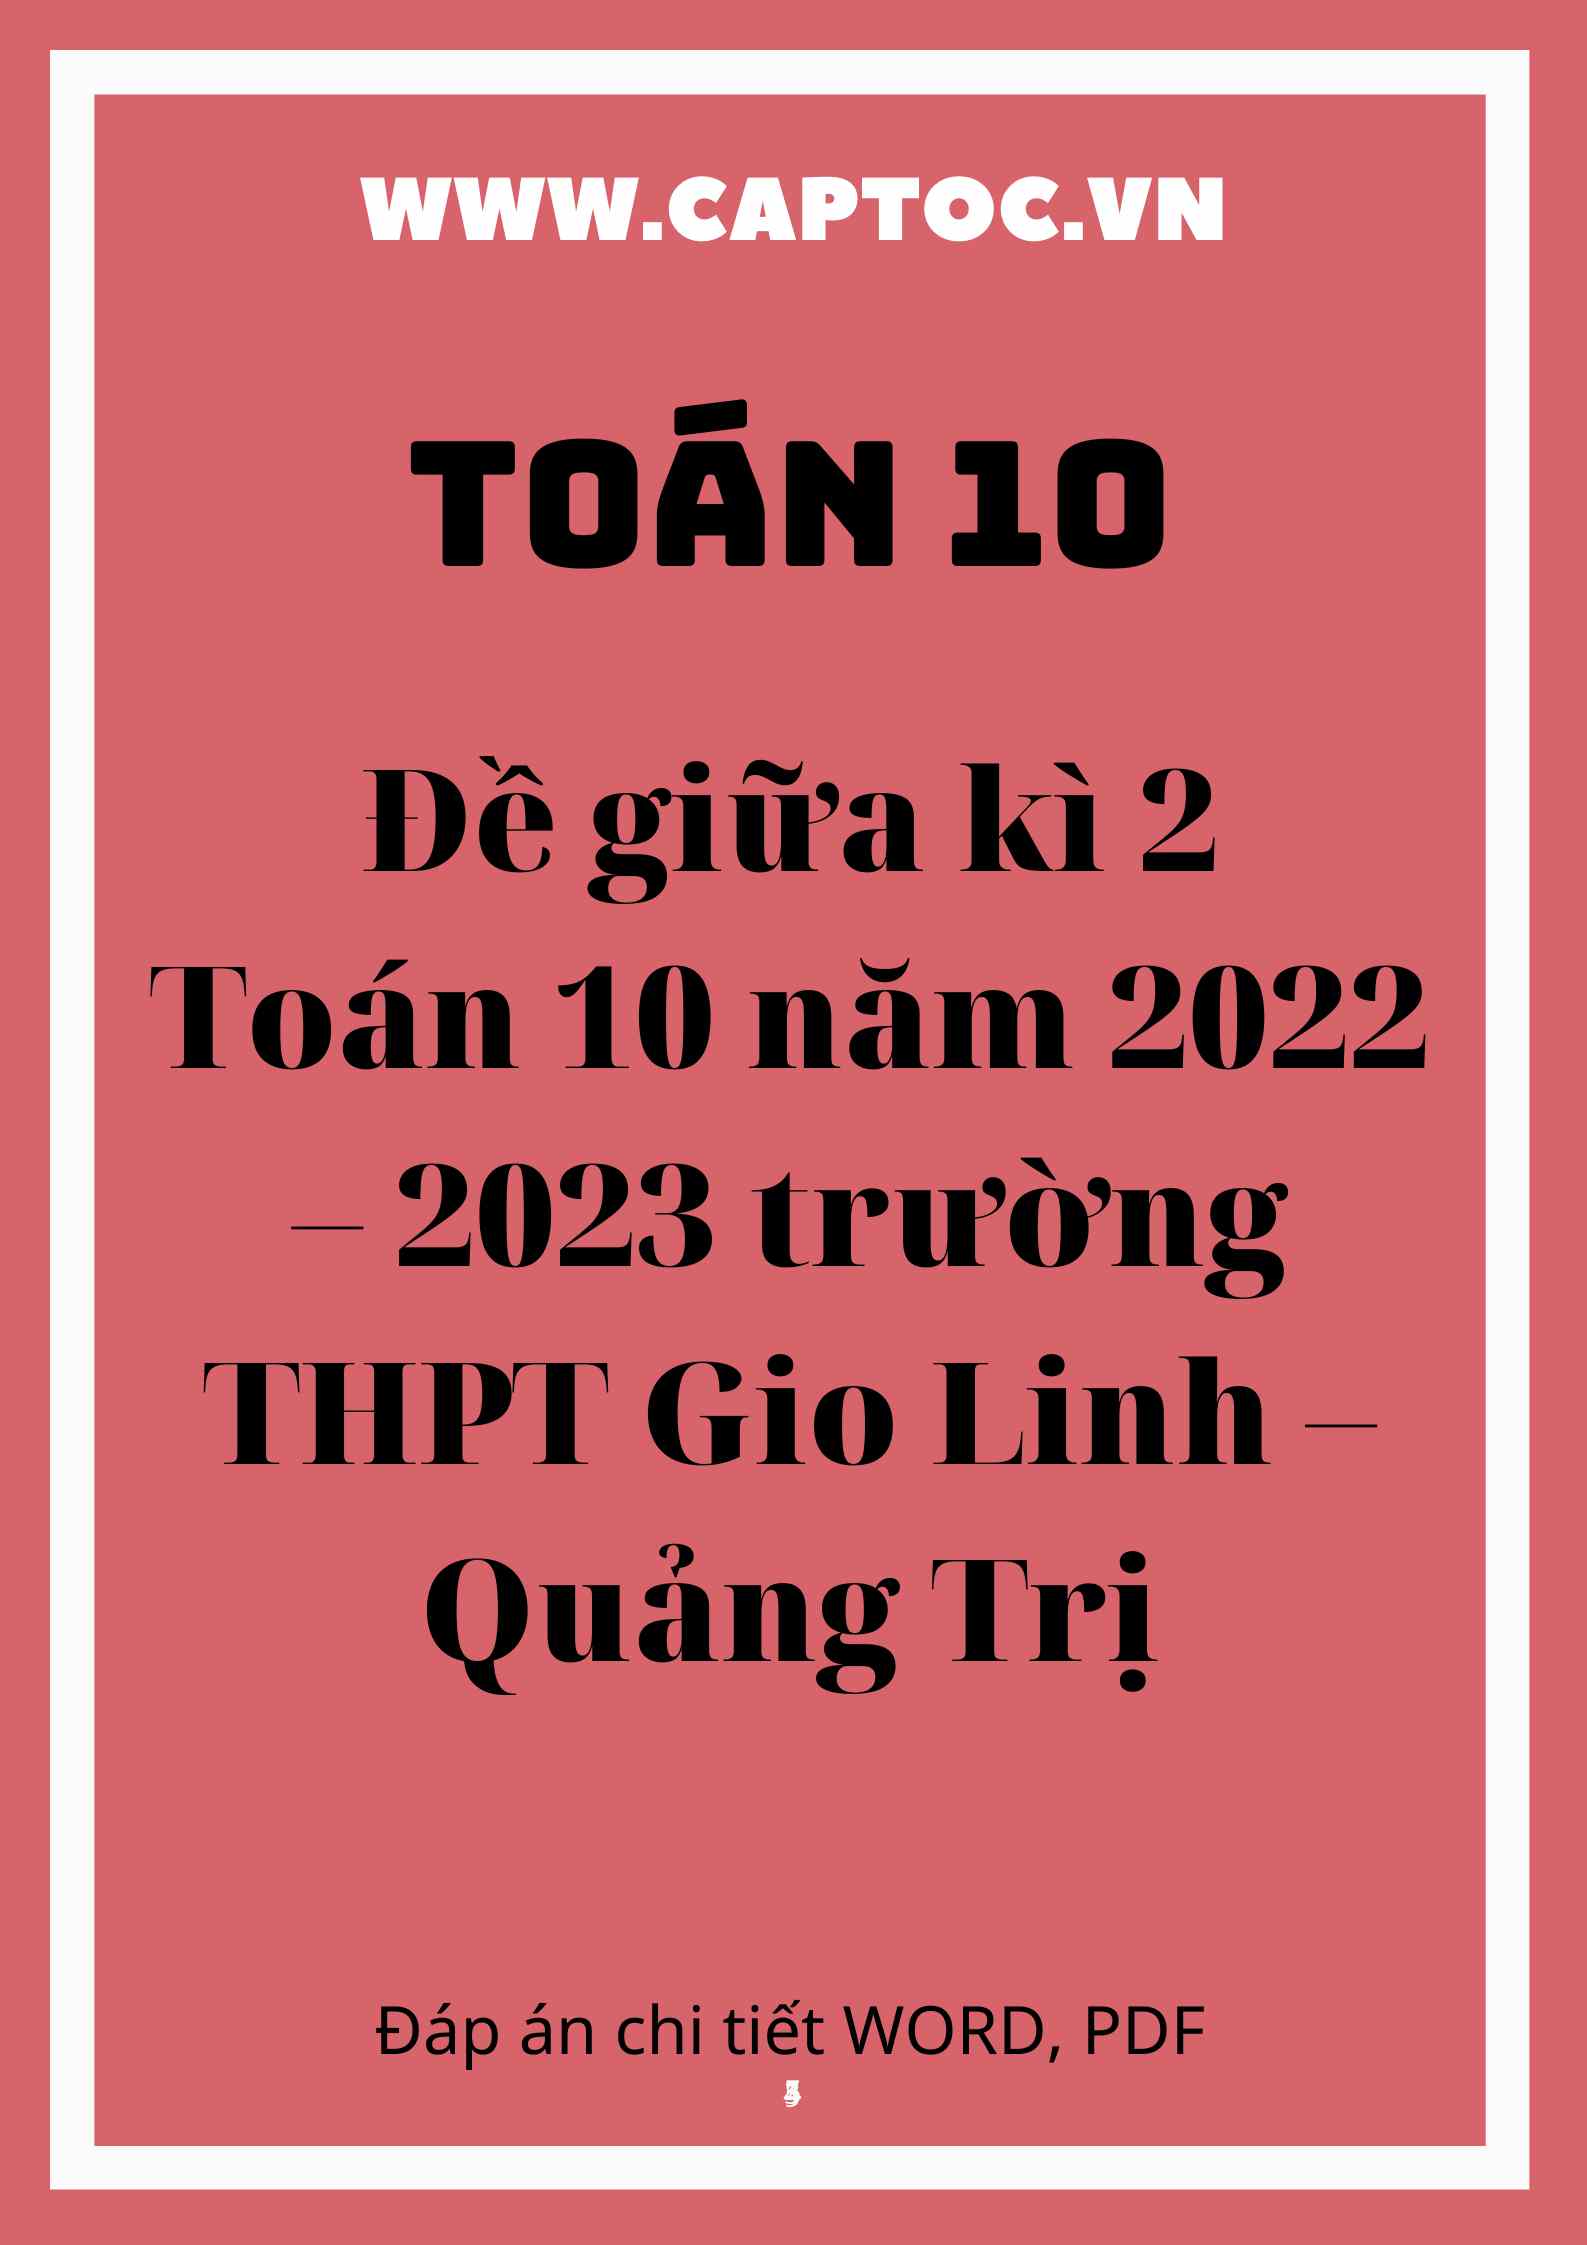 Đề giữa kì 2 Toán 10 năm 2022 – 2023 trường THPT Gio Linh – Quảng Trị